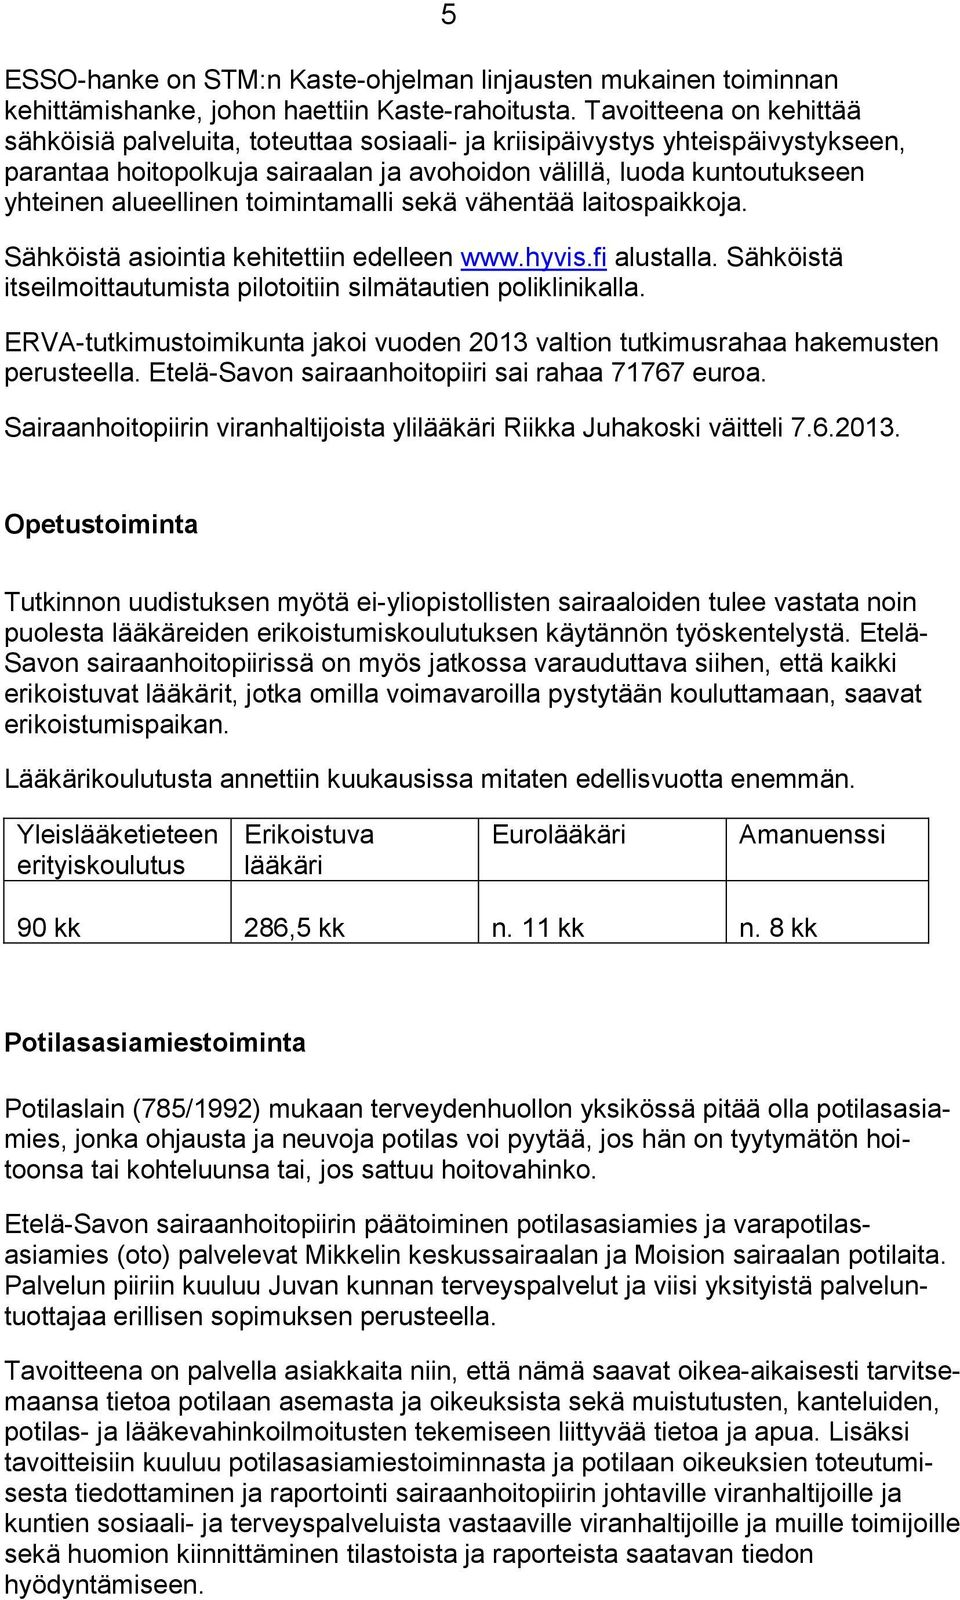 alueellinen toimintamalli sekä vähentää laitospaikkoja. Sähköistä asiointia kehitettiin edelleen www.hyvis.fi alustalla. Sähköistä itseilmoittautumista pilotoitiin silmätautien poliklinikalla.